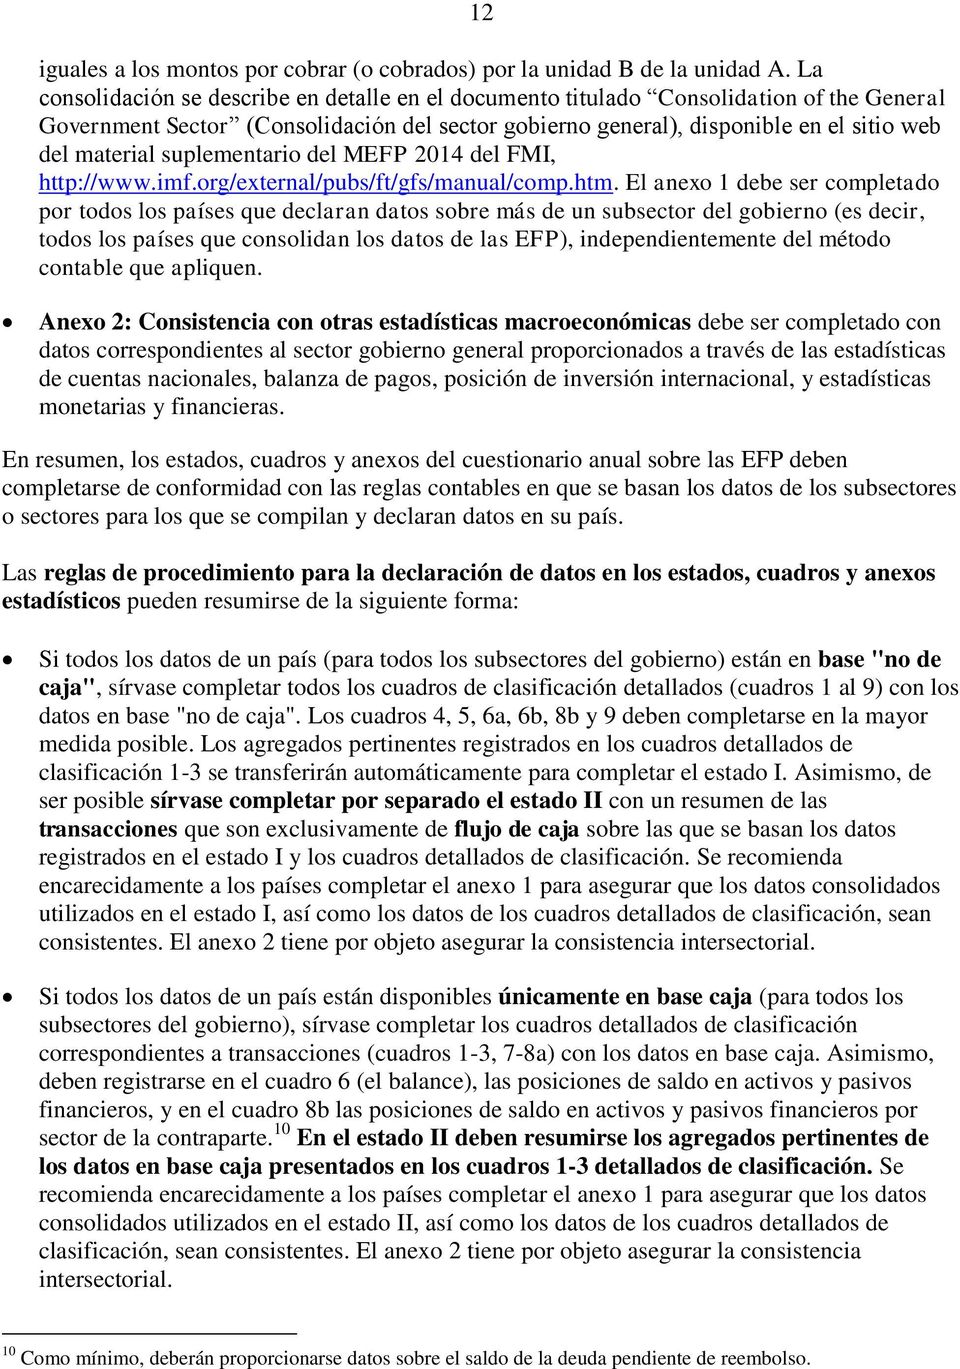 suplementario del MEFP 2014 del FMI, http://www.imf.org/external/pubs/ft/gfs/manual/comp.htm.